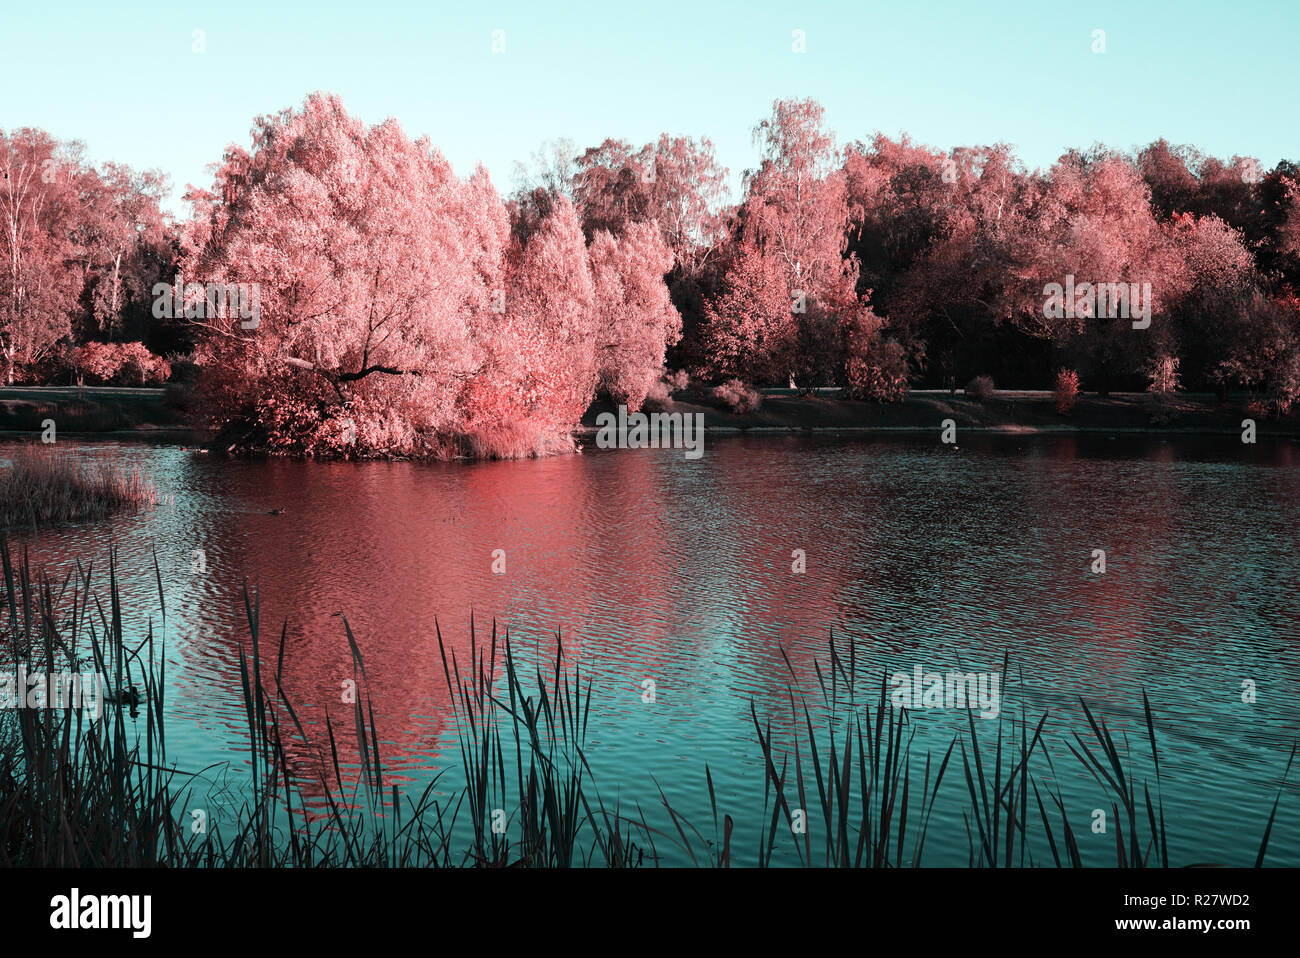 Un albero con il fogliame rosa vicino al laghetto. La superficie di acqua come uno specchio riflette gli alberi che crescono su l'altro lato. Foto Stock